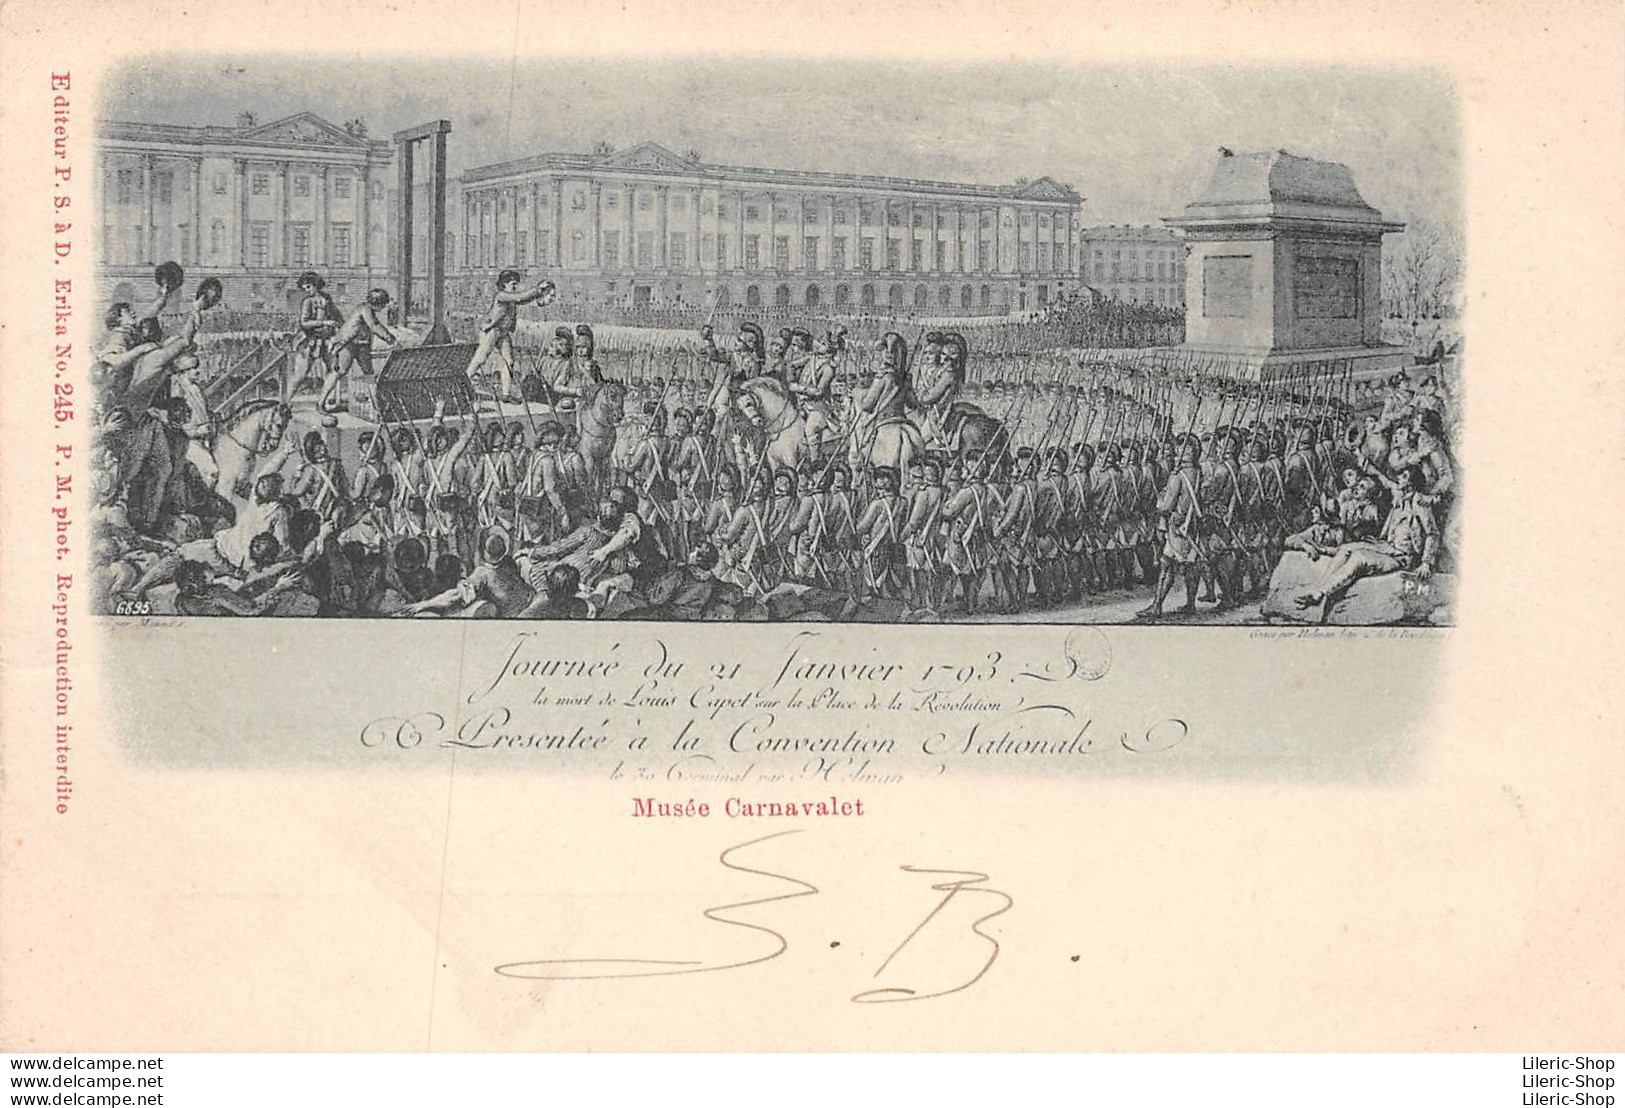 Musée Carnavalet - Journée Du 21 01 1793 - Mort De Louis Capet Sur La Place De La Révolution - Éd. P.S. 1903 CPR - Musées